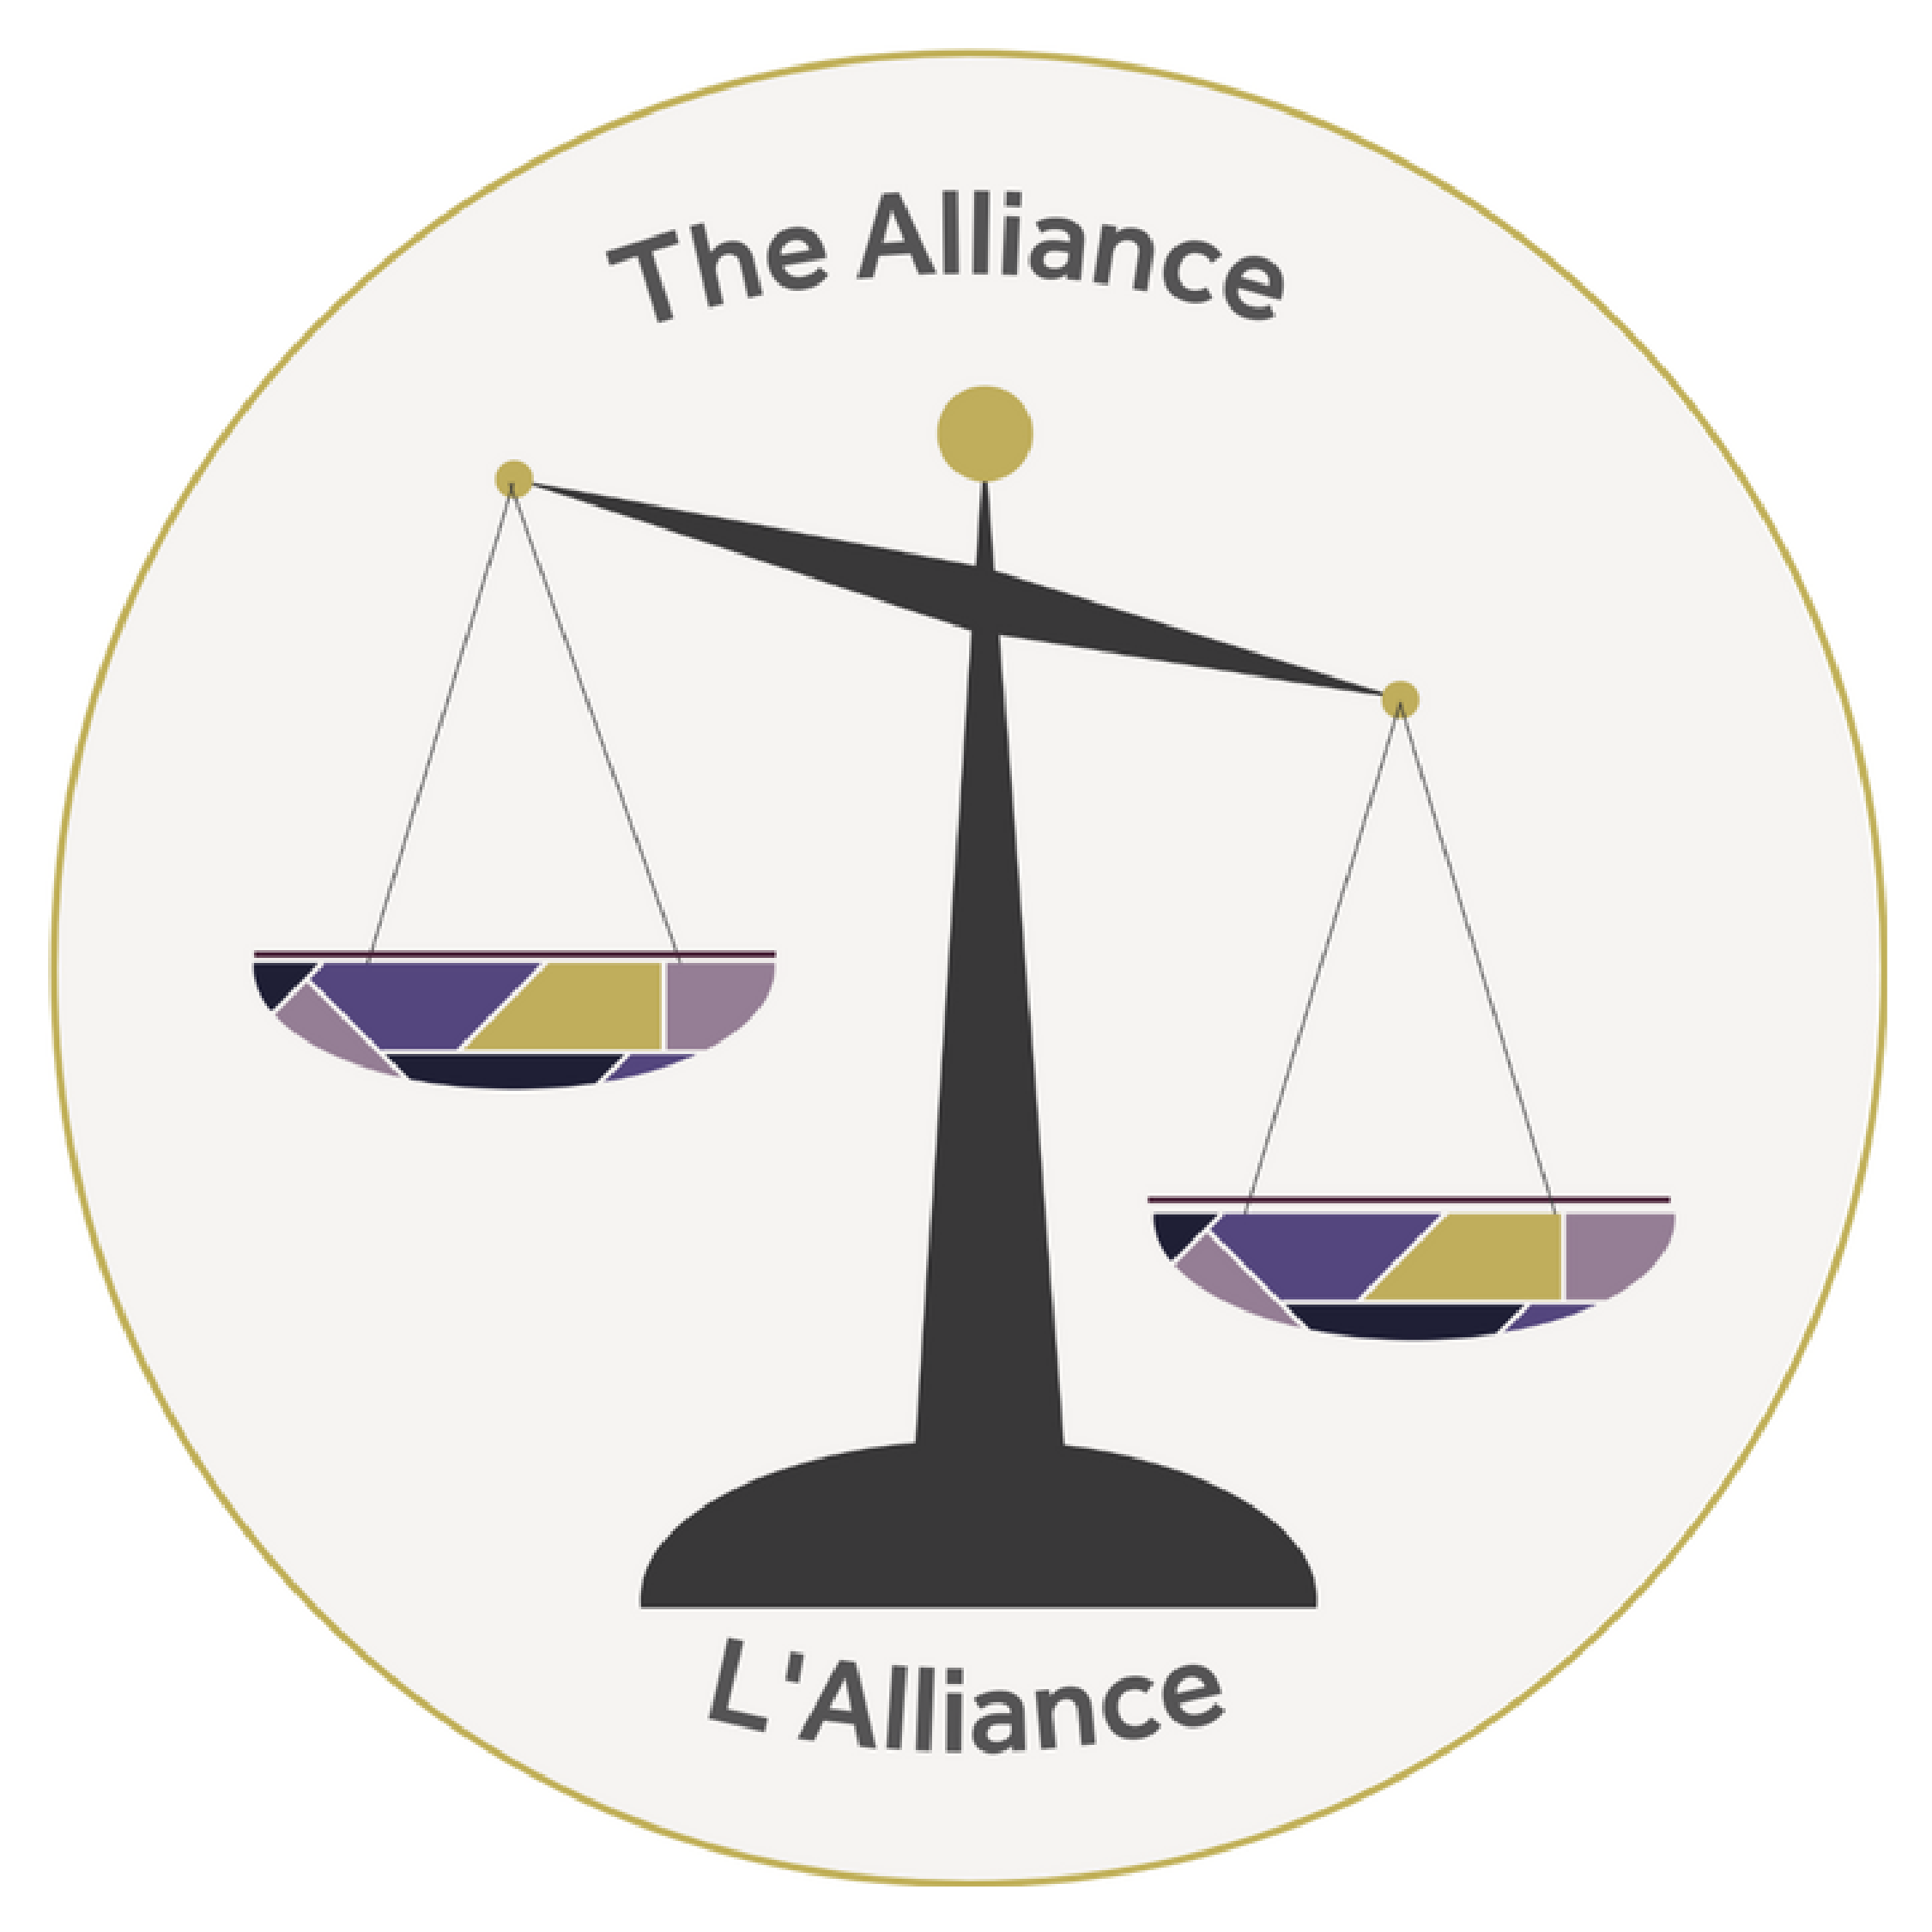 The Economic Equity Alliance